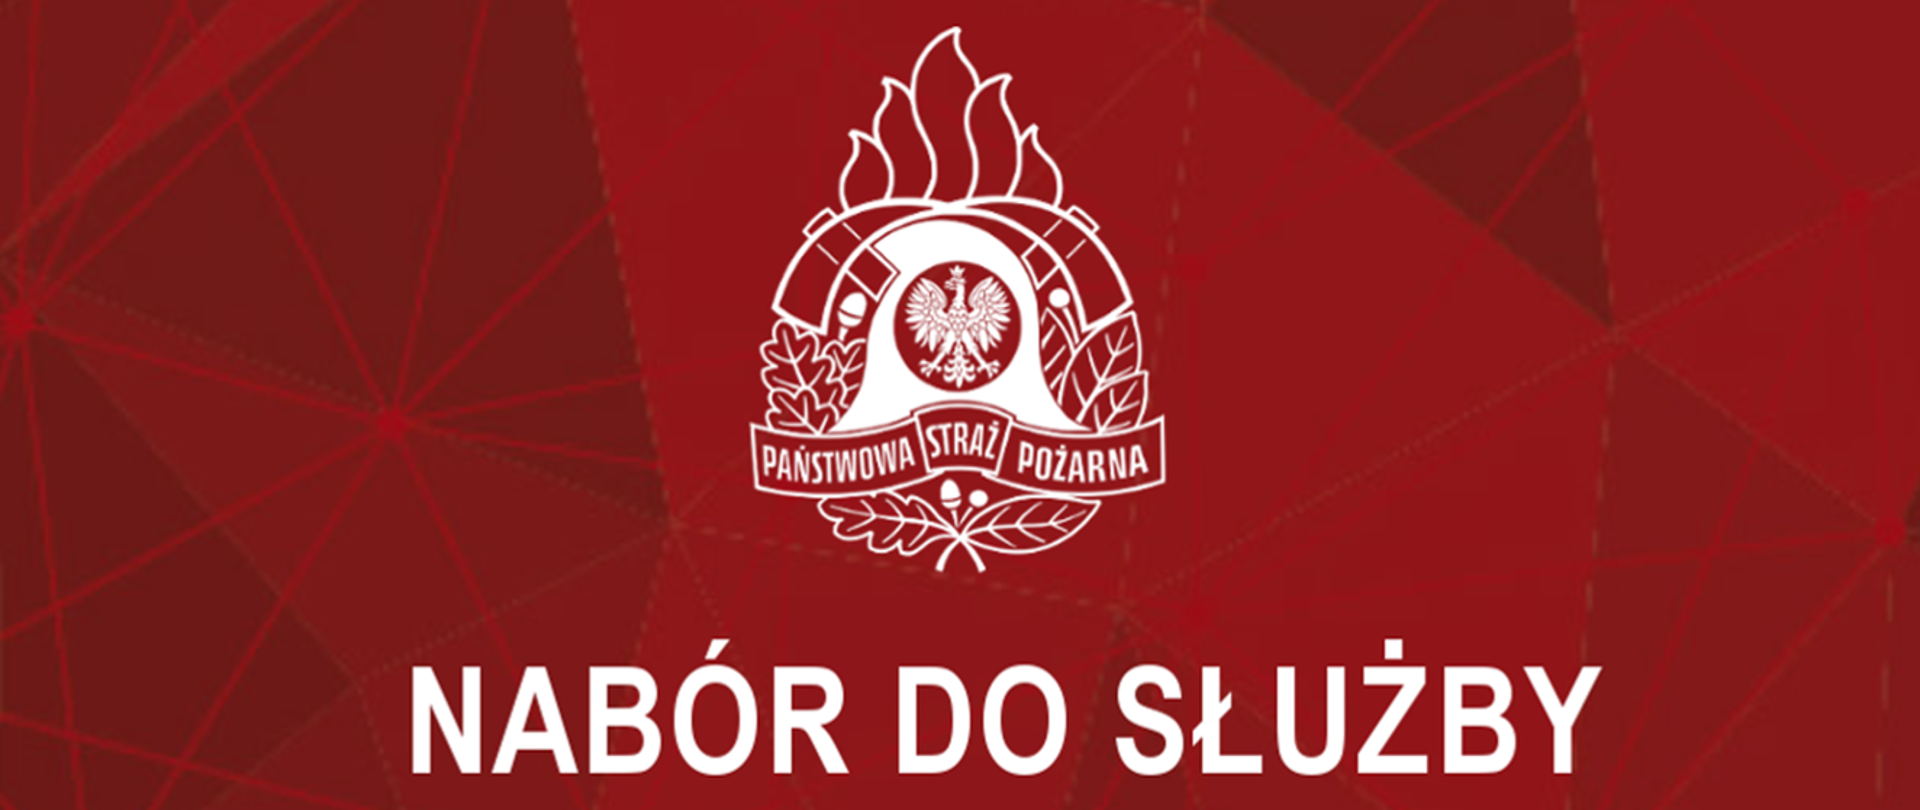 Grafika promująca nabór do służby - czerwone tło, białe napisy i logo psp